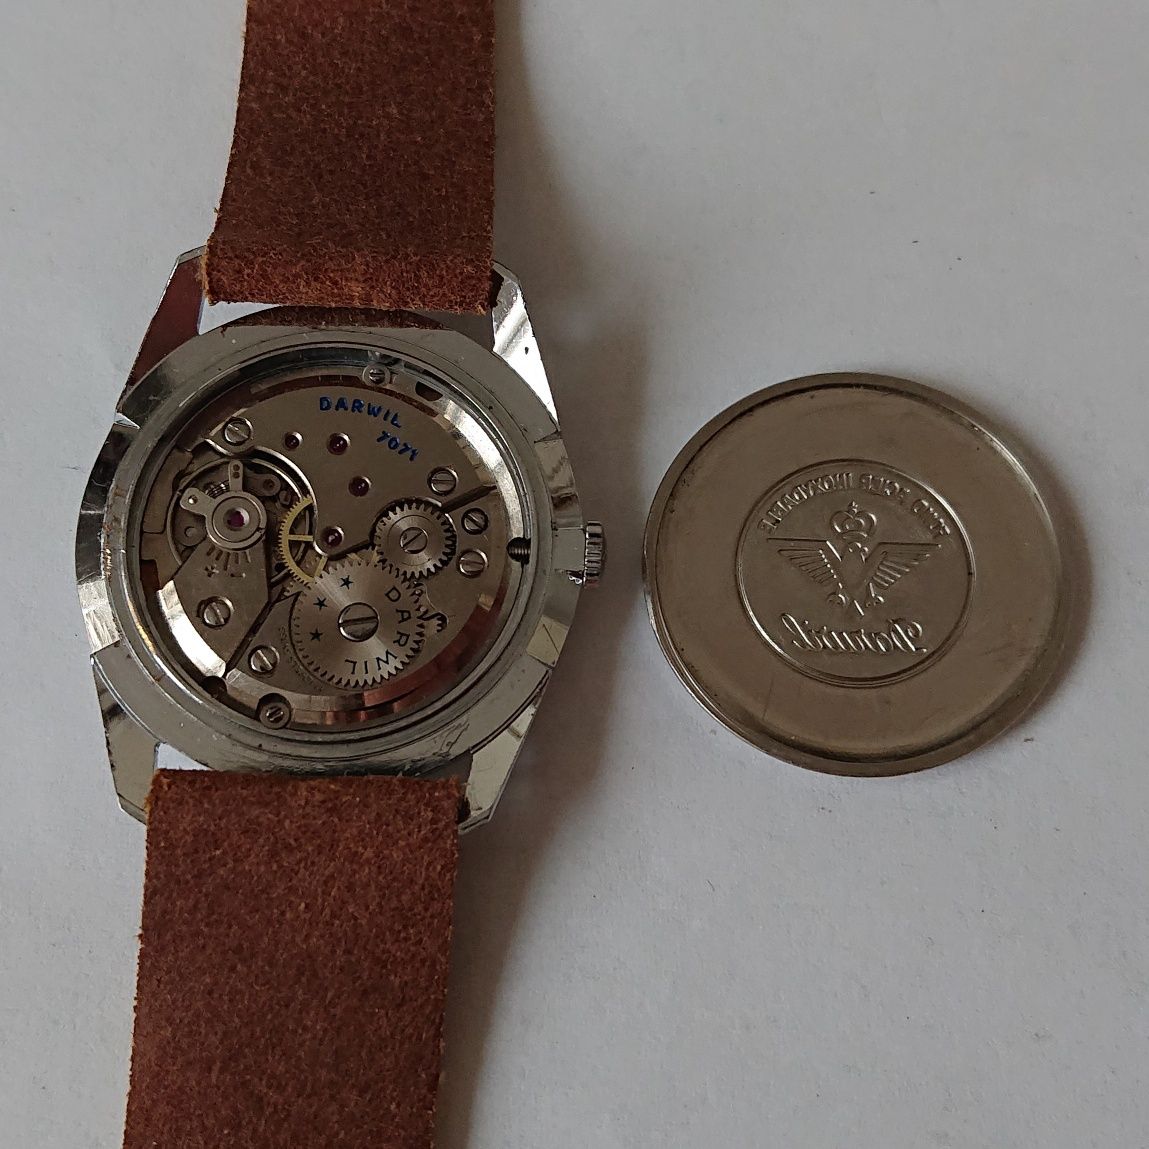 Darwil Specjal Flat Lord 71 swiss made zegarek naręczny kolekcjonerski